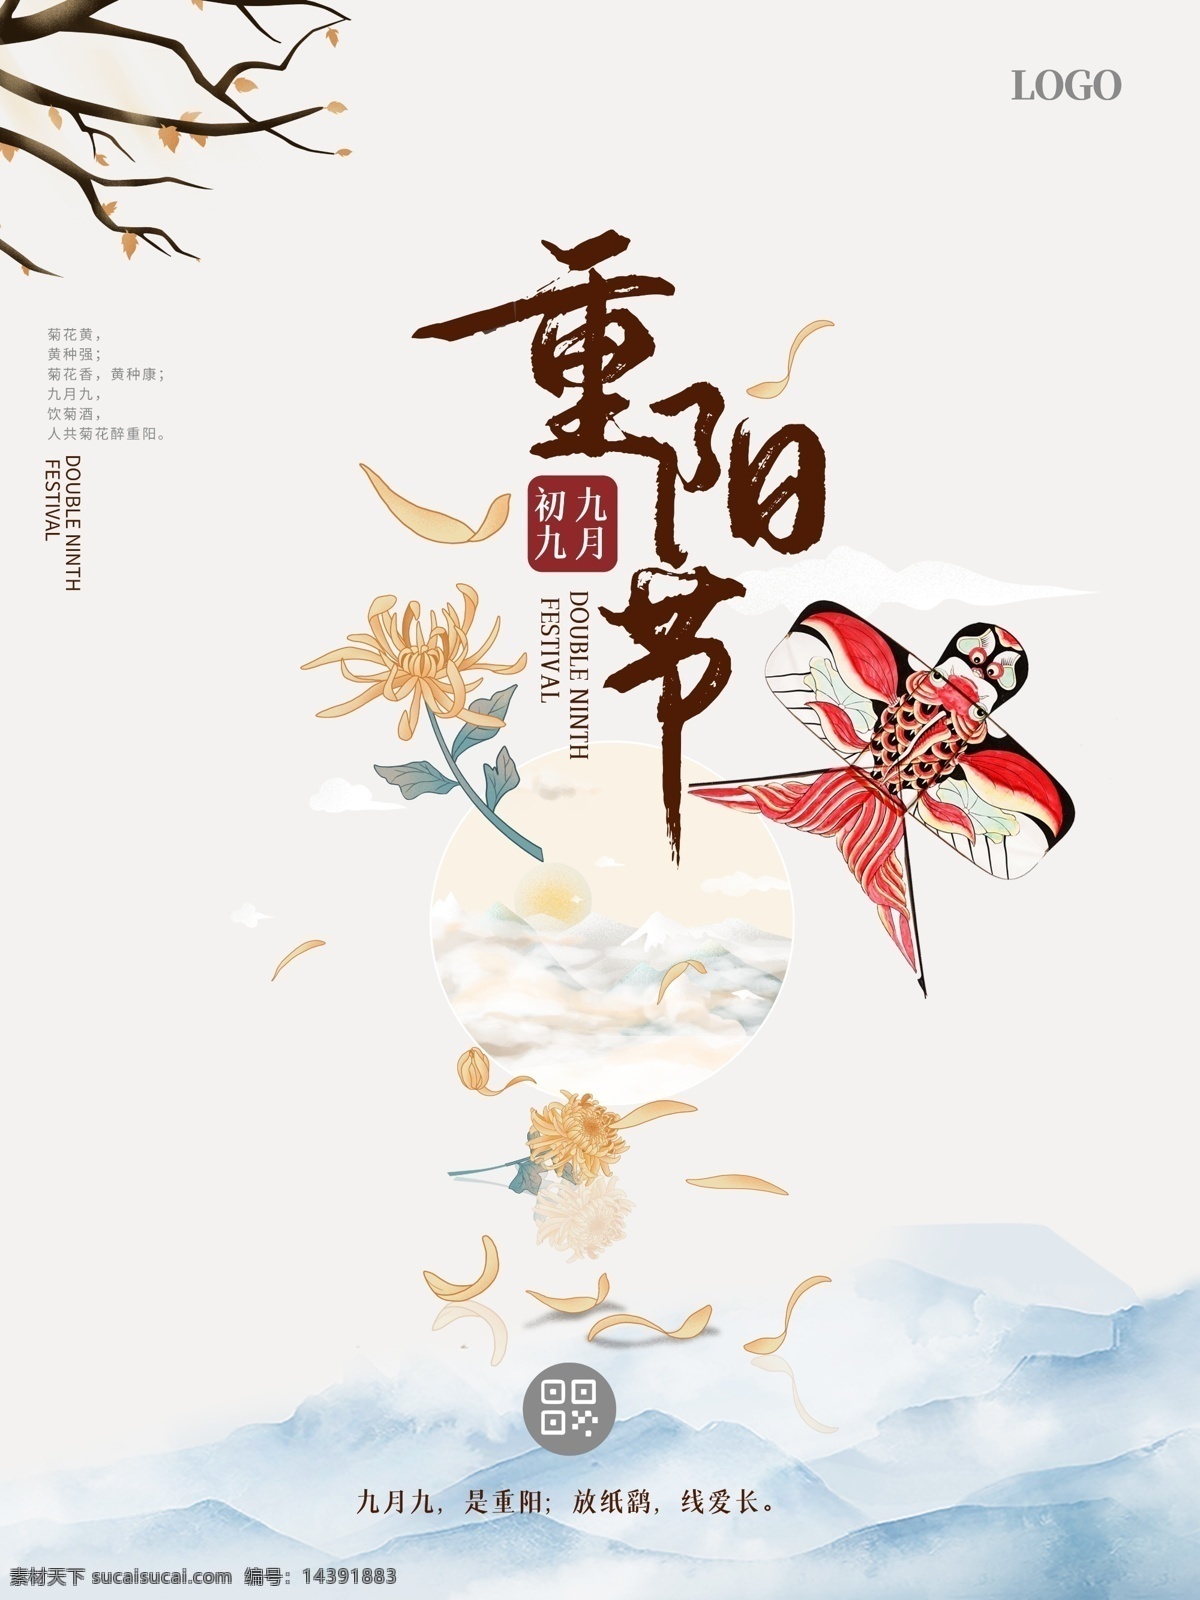 重阳节图片 重阳节 传统节日 节气 古风 海报